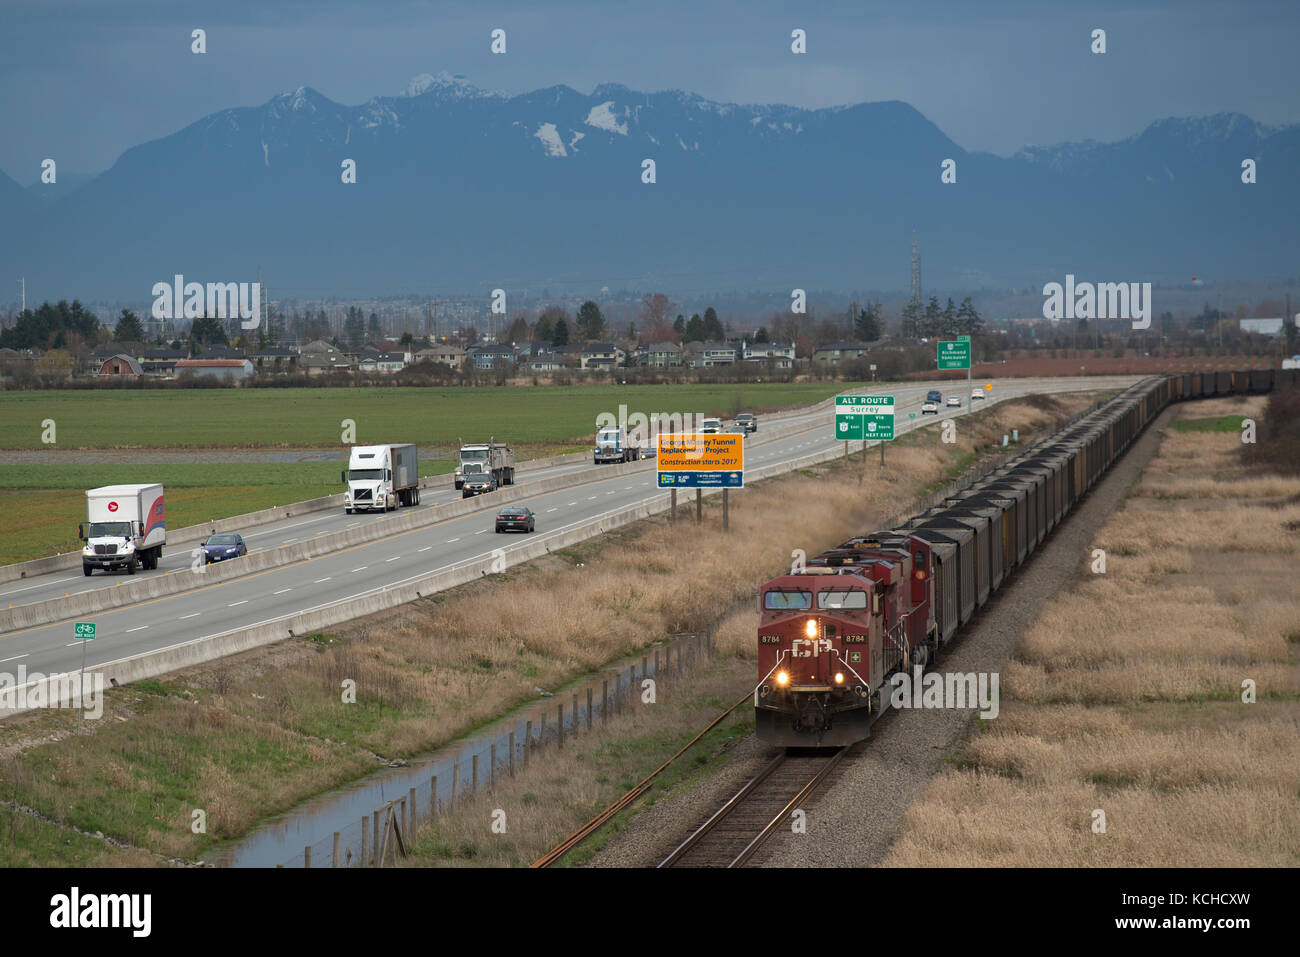 Ein CP (Canadian Pacific) Kohle Zug in Delta, British Columbia Kanada seine Endstation von Roberts Bank Superport nähert. Stockfoto